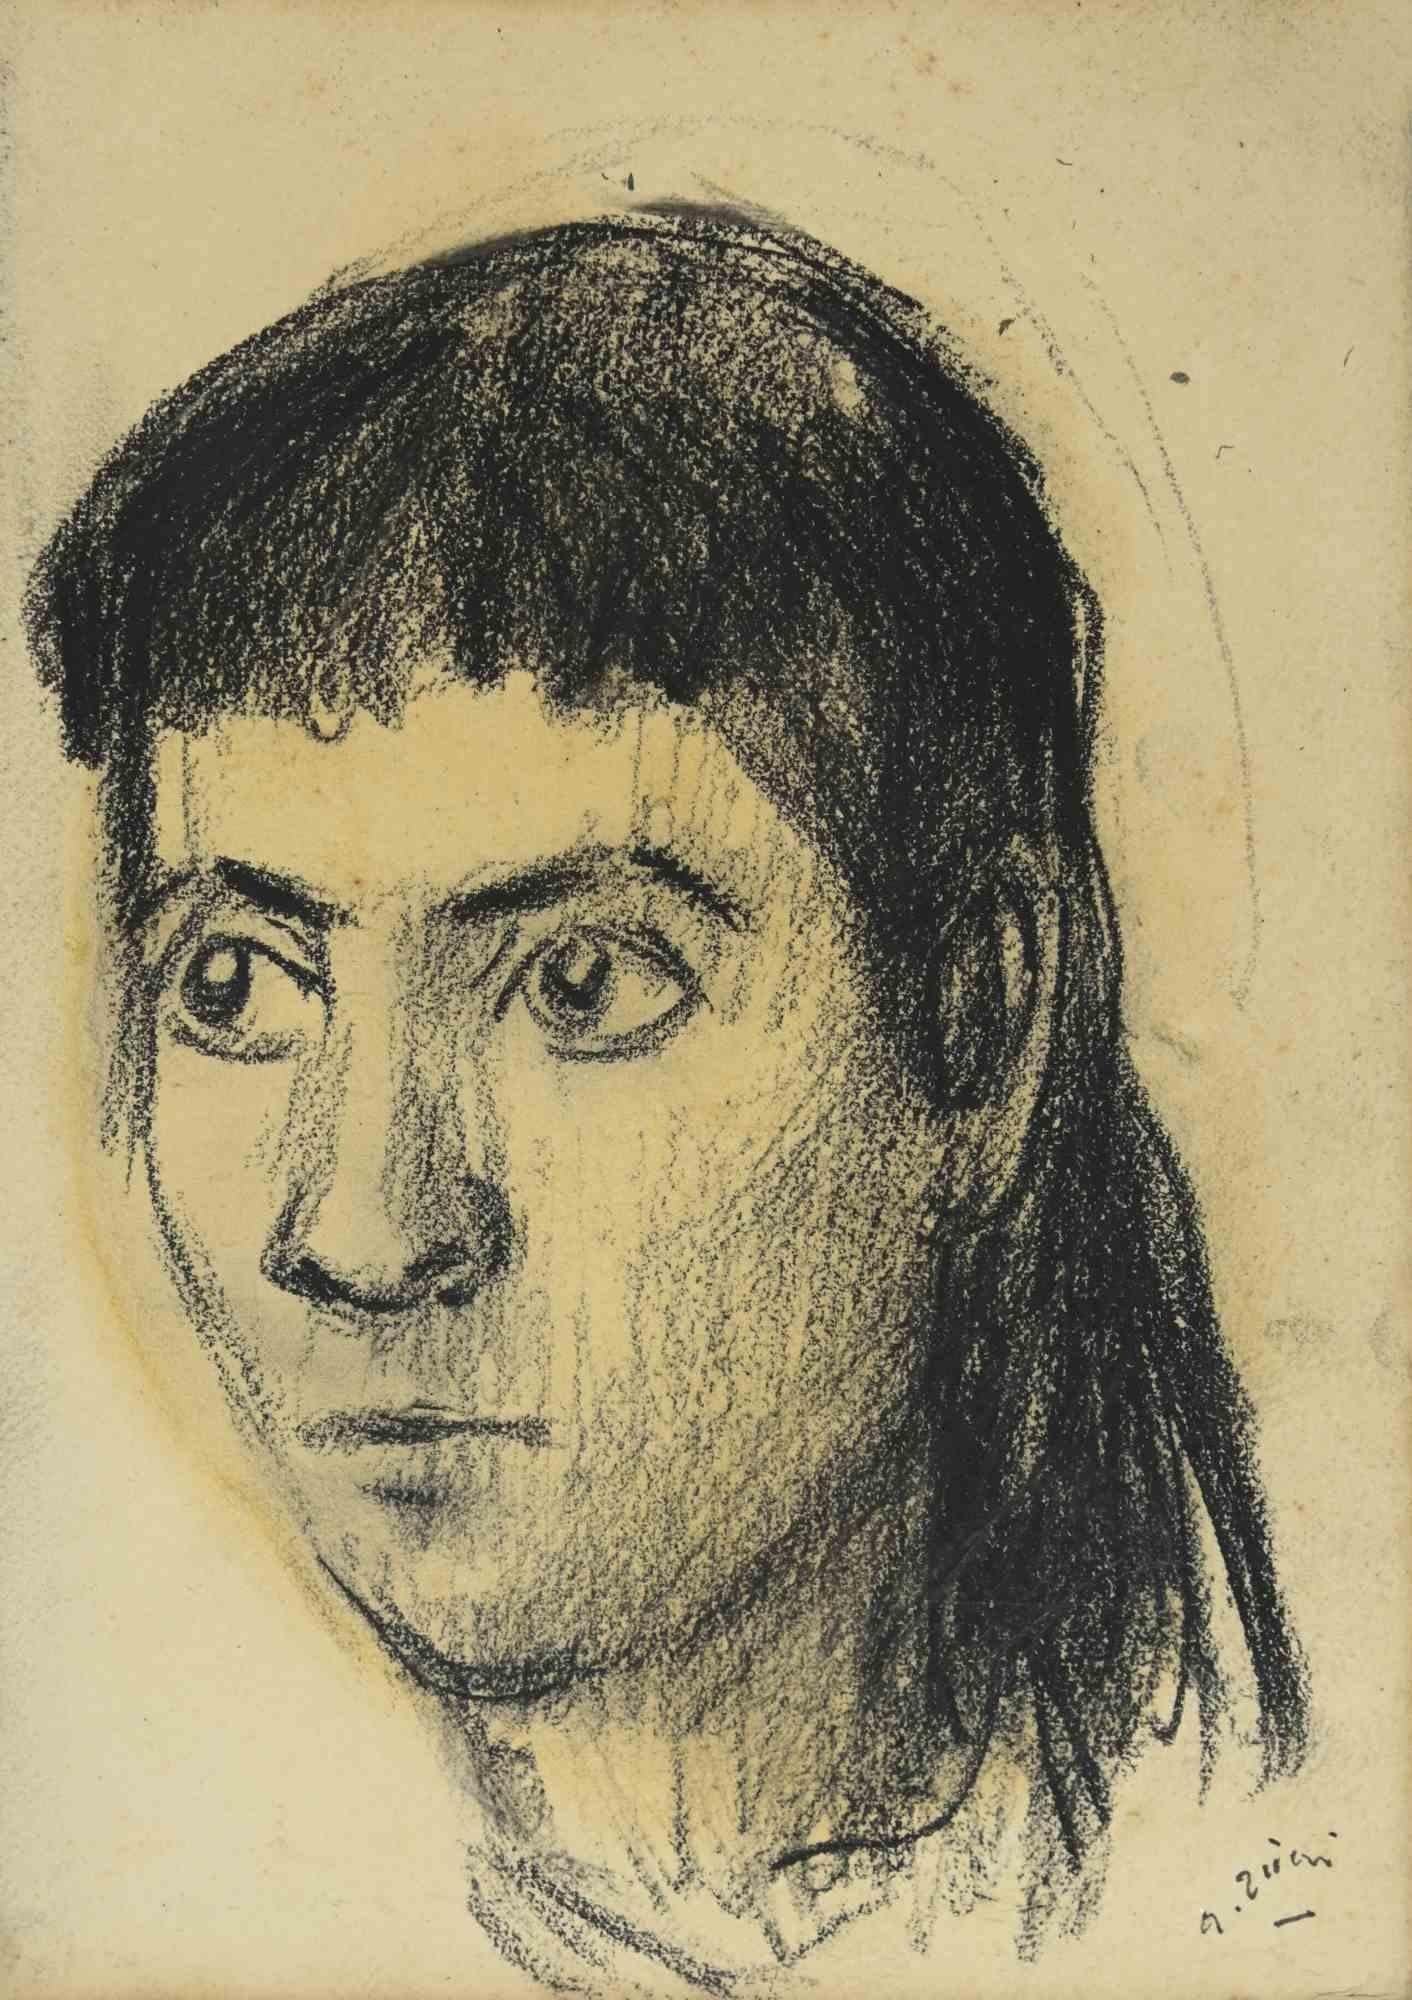 Das Porträt ist eine Zeichnung von Alberto Ziveri aus den 1930er Jahren.

Holzkohle und Pastell auf Papier.

Handsigniert.

In gutem Zustand.

Das Kunstwerk wird durch geschickte Striche meisterhaft dargestellt.

Alberto Ziveri (Rom, 1908 - 1990),